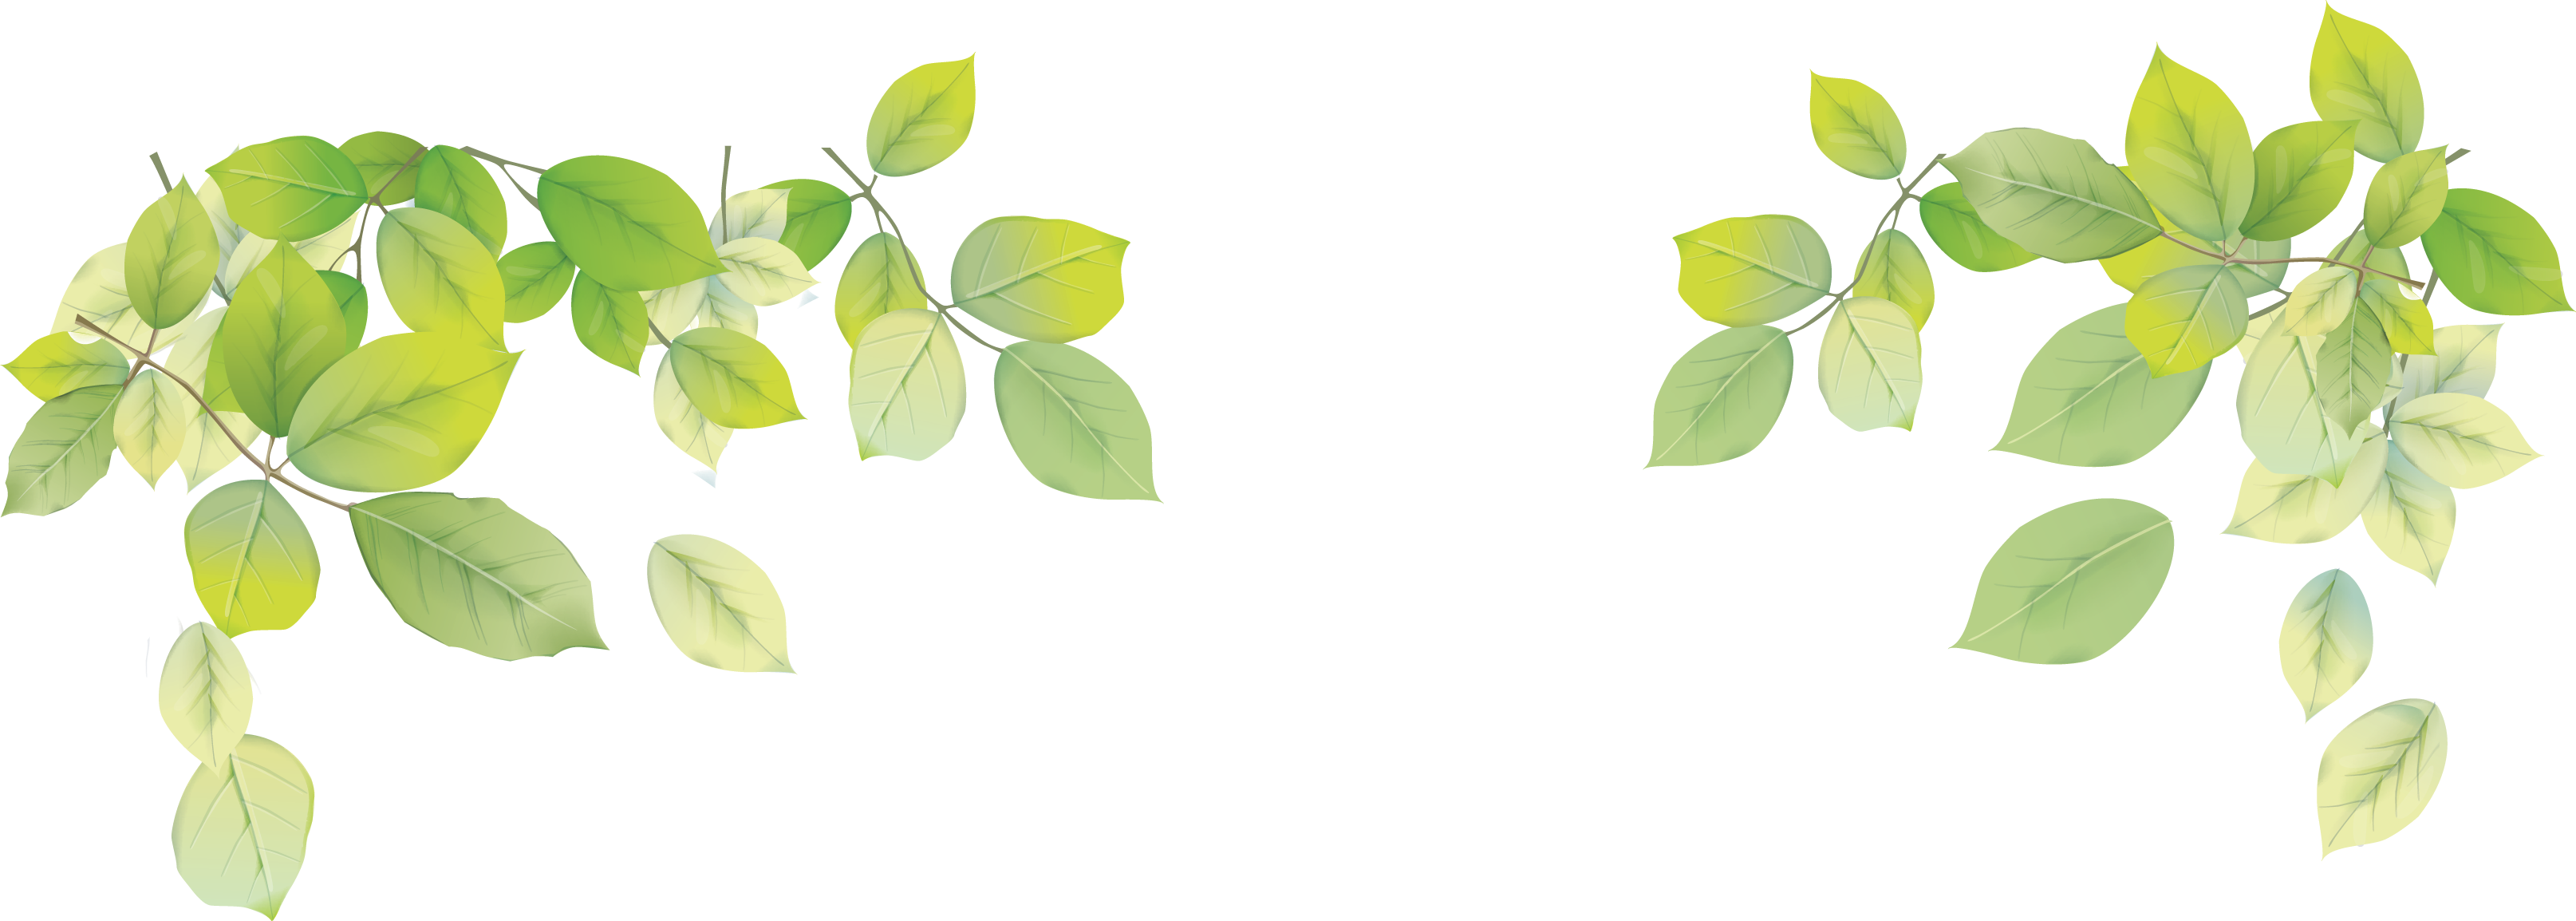 Мелкие листья на прозрачном фоне фото